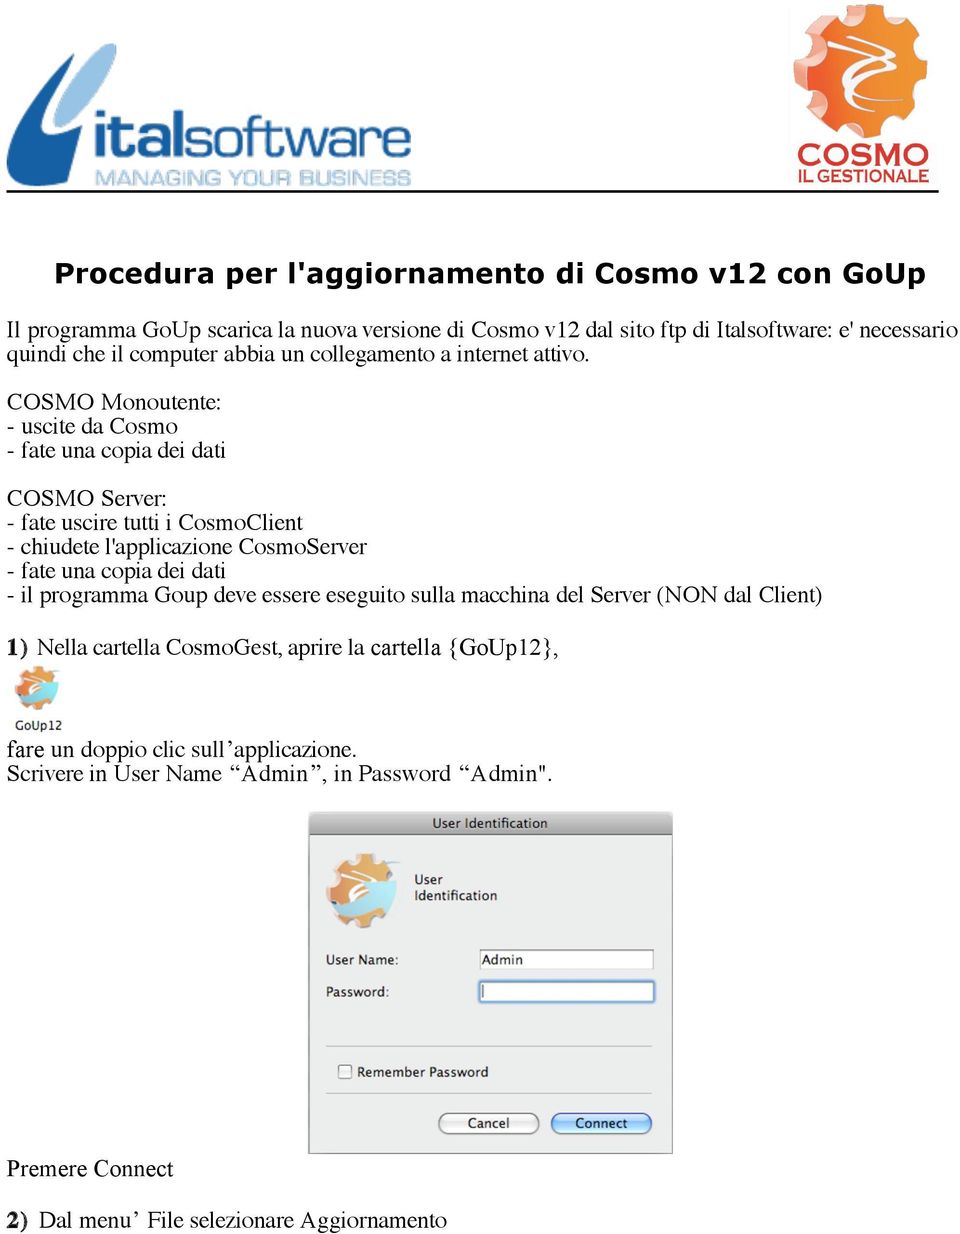 COSMO Monoutente: - uscite da Cosmo - fate una copia dei dati COSMO Server: - fate uscire tutti i CosmoClient - chiudete l'applicazione CosmoServer - fate una copia dei